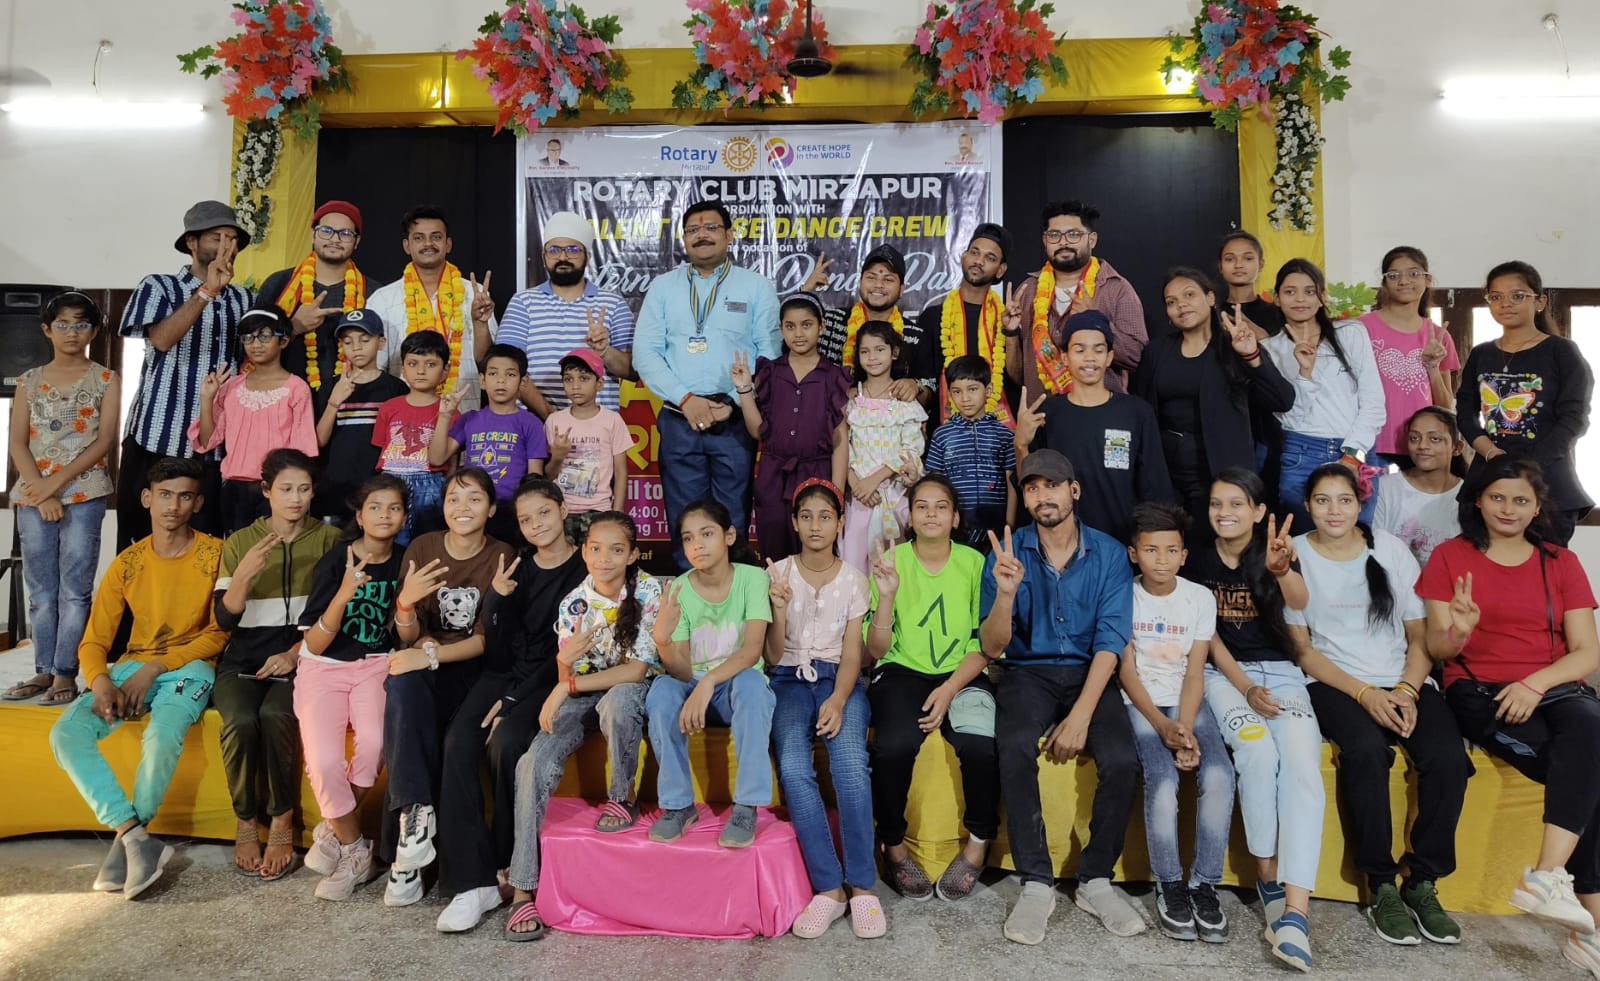 अंतरराष्ट्रीय नृत्य दिवस पर रोटरी क्लब मीरजापुर द्वारा किया गया नि:शुल्क पाँच दिवसीय डांस कार्यशाला का आयोजन